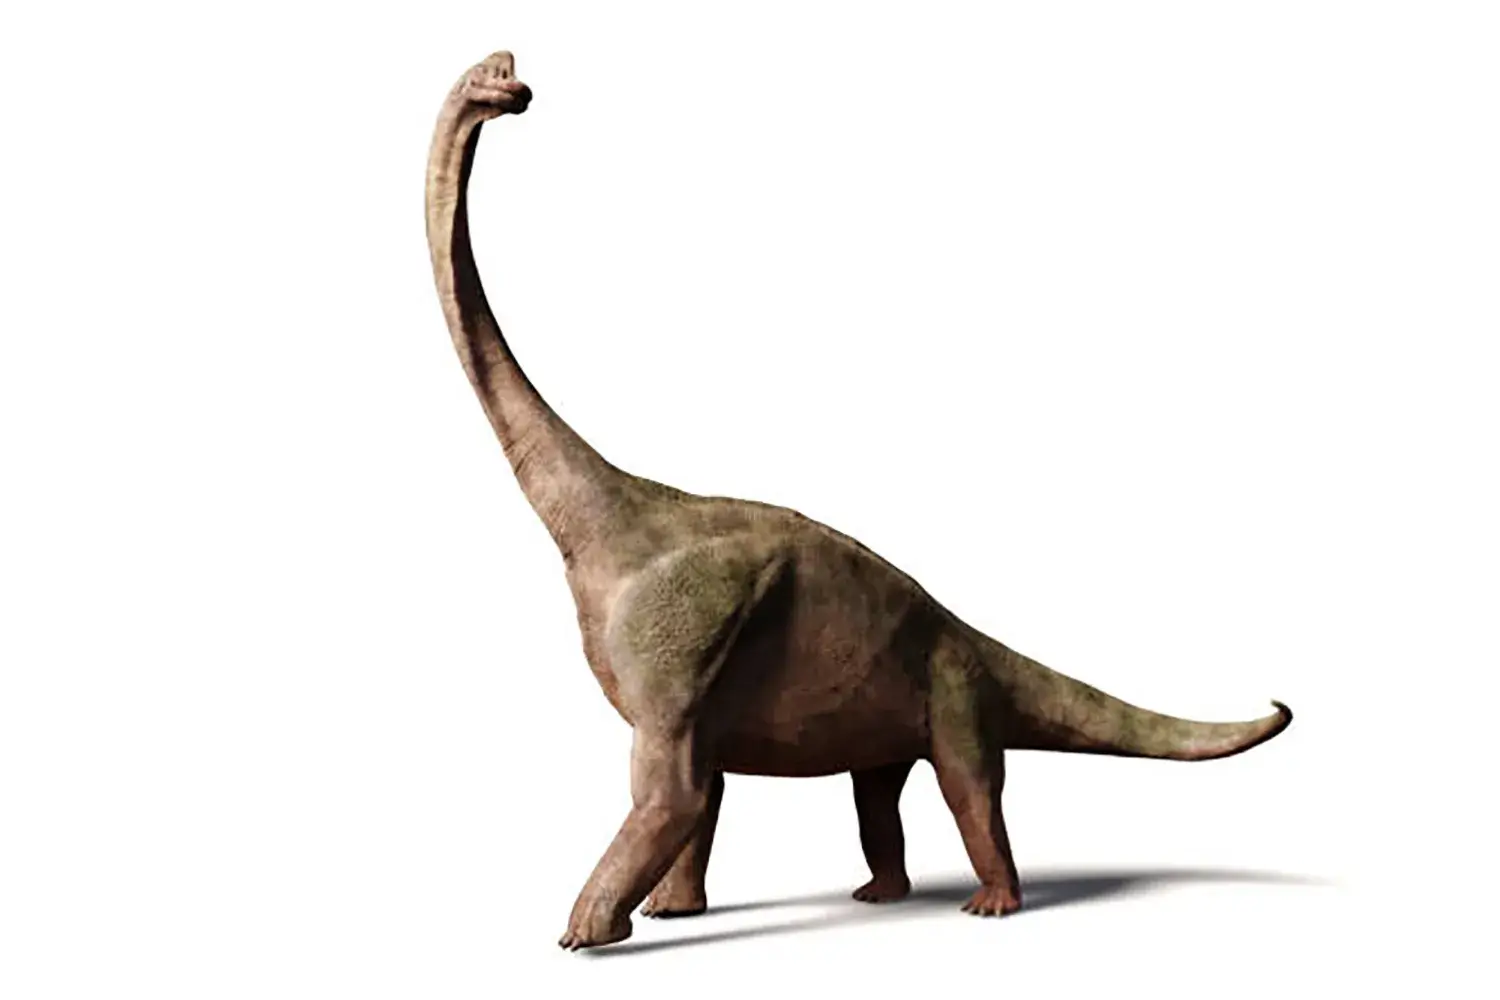 代表的な竜脚形類の恐竜『ブラキオサウルス』